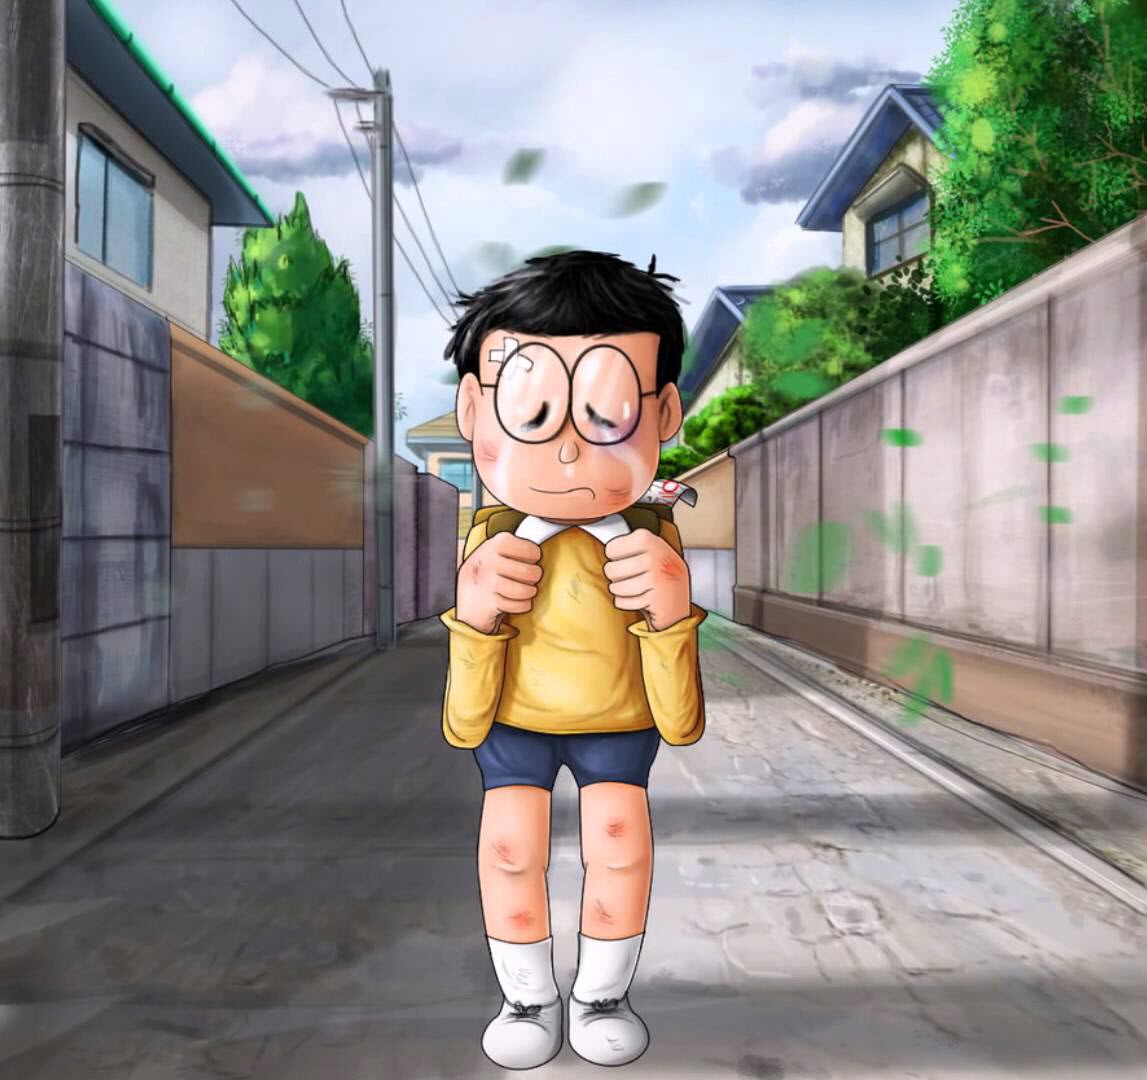 Nobita khóc: Bức ảnh này cho thấy một hình ảnh cảm động của Nobita đang khóc. Bạn sẽ không thể nhịn được nước mắt khi ngắm nhìn tình cảm và sự gắn bó giữa các nhân vật trong bộ phim hoạt hình này. Hãy đến và khám phá chuyển động đầy xúc động của nobita trong bộ phim dài tập này.